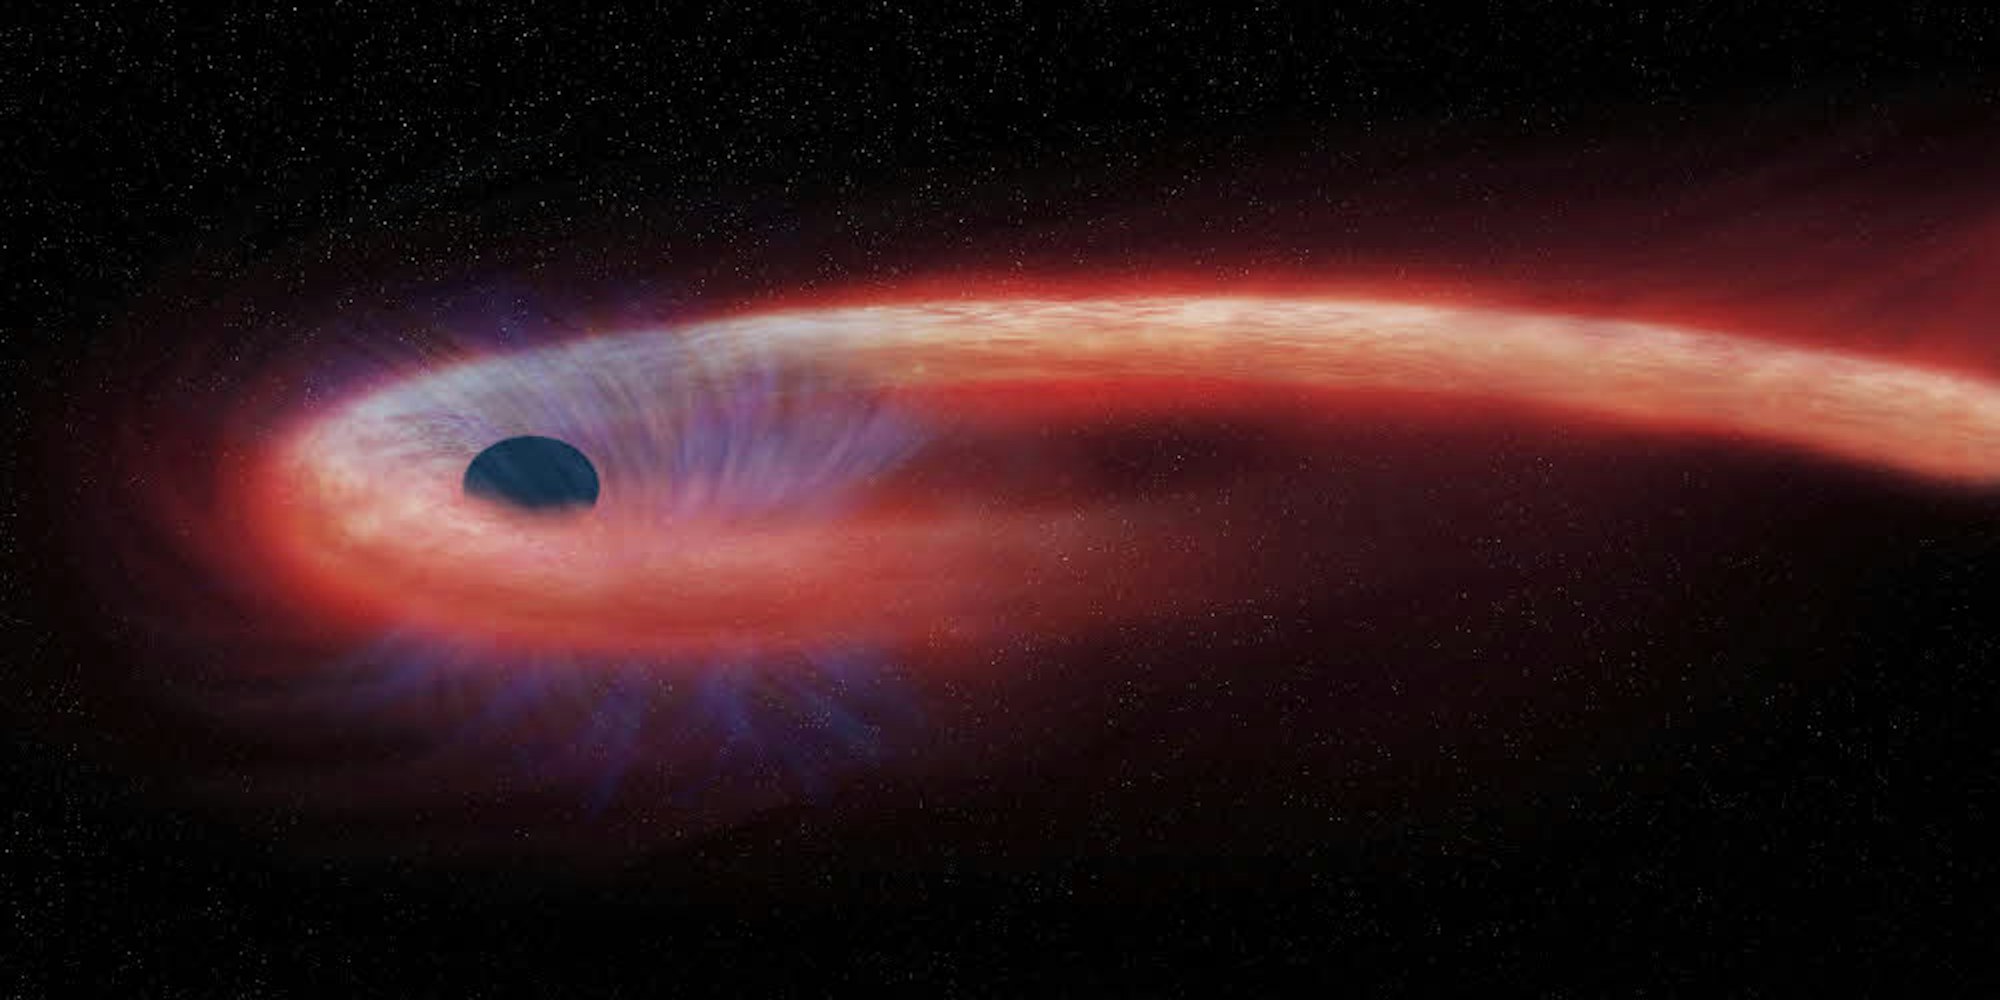 Diese von der Nasa bereitgestellte künstlerische Darstellung zeigt einen Stern, der von einem Schwarzen Loch geschluckt wird und dabei einen Schweif aus Röntgenstrahlen nach sich zieht, dargestellt in rot.